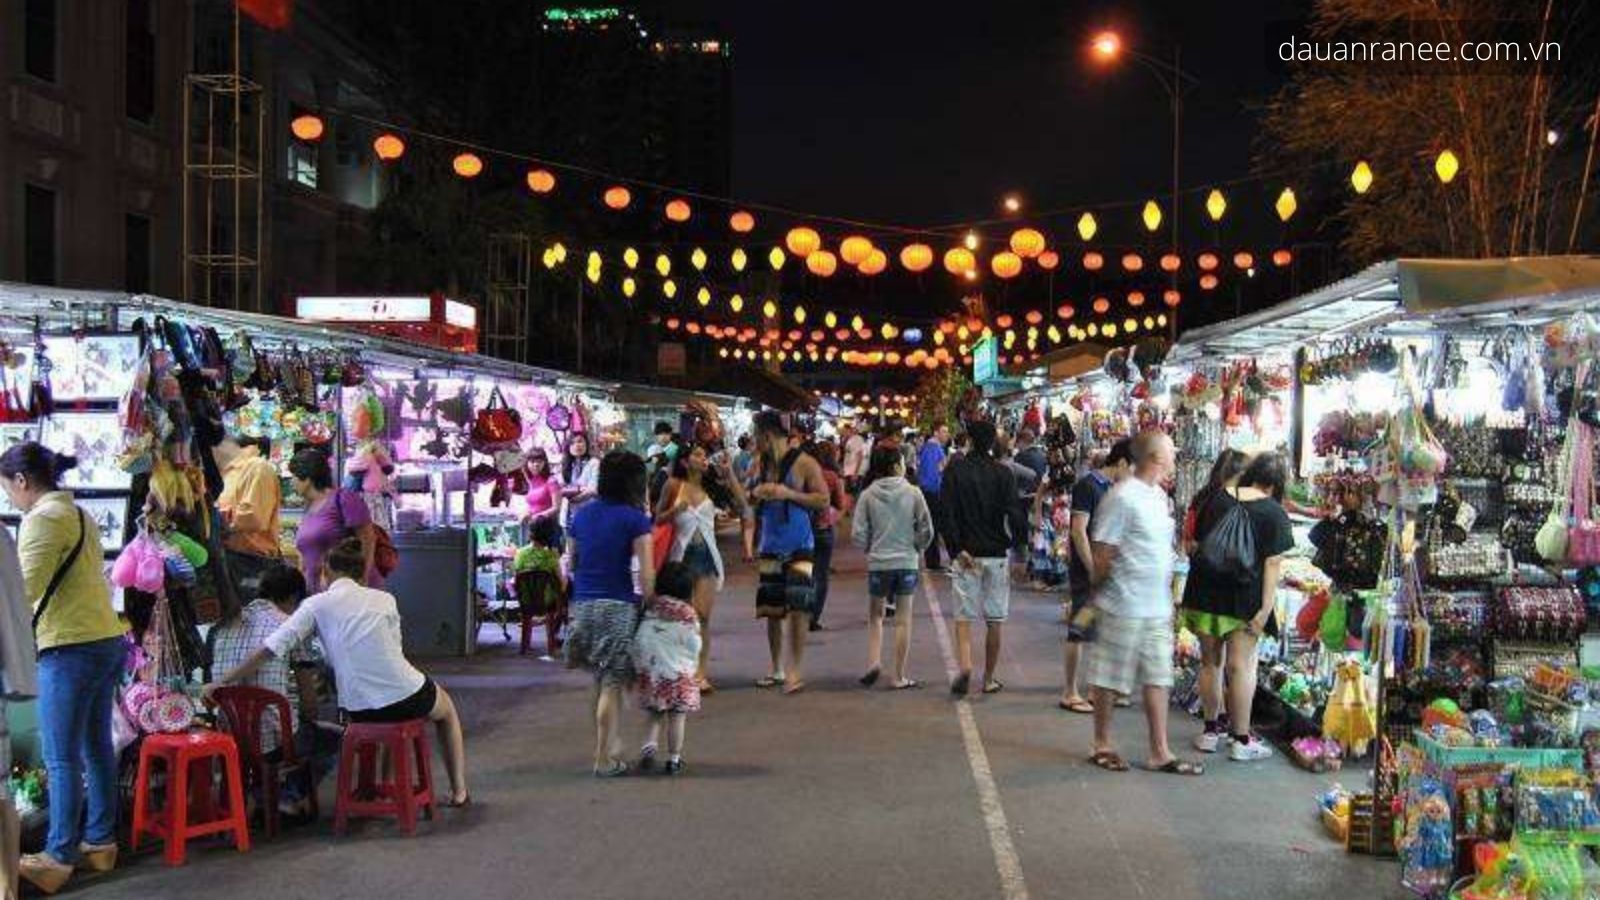 Mua đặc sản Nha Trang làm quà tại chợ đêm Nha Trang nổi tiếng